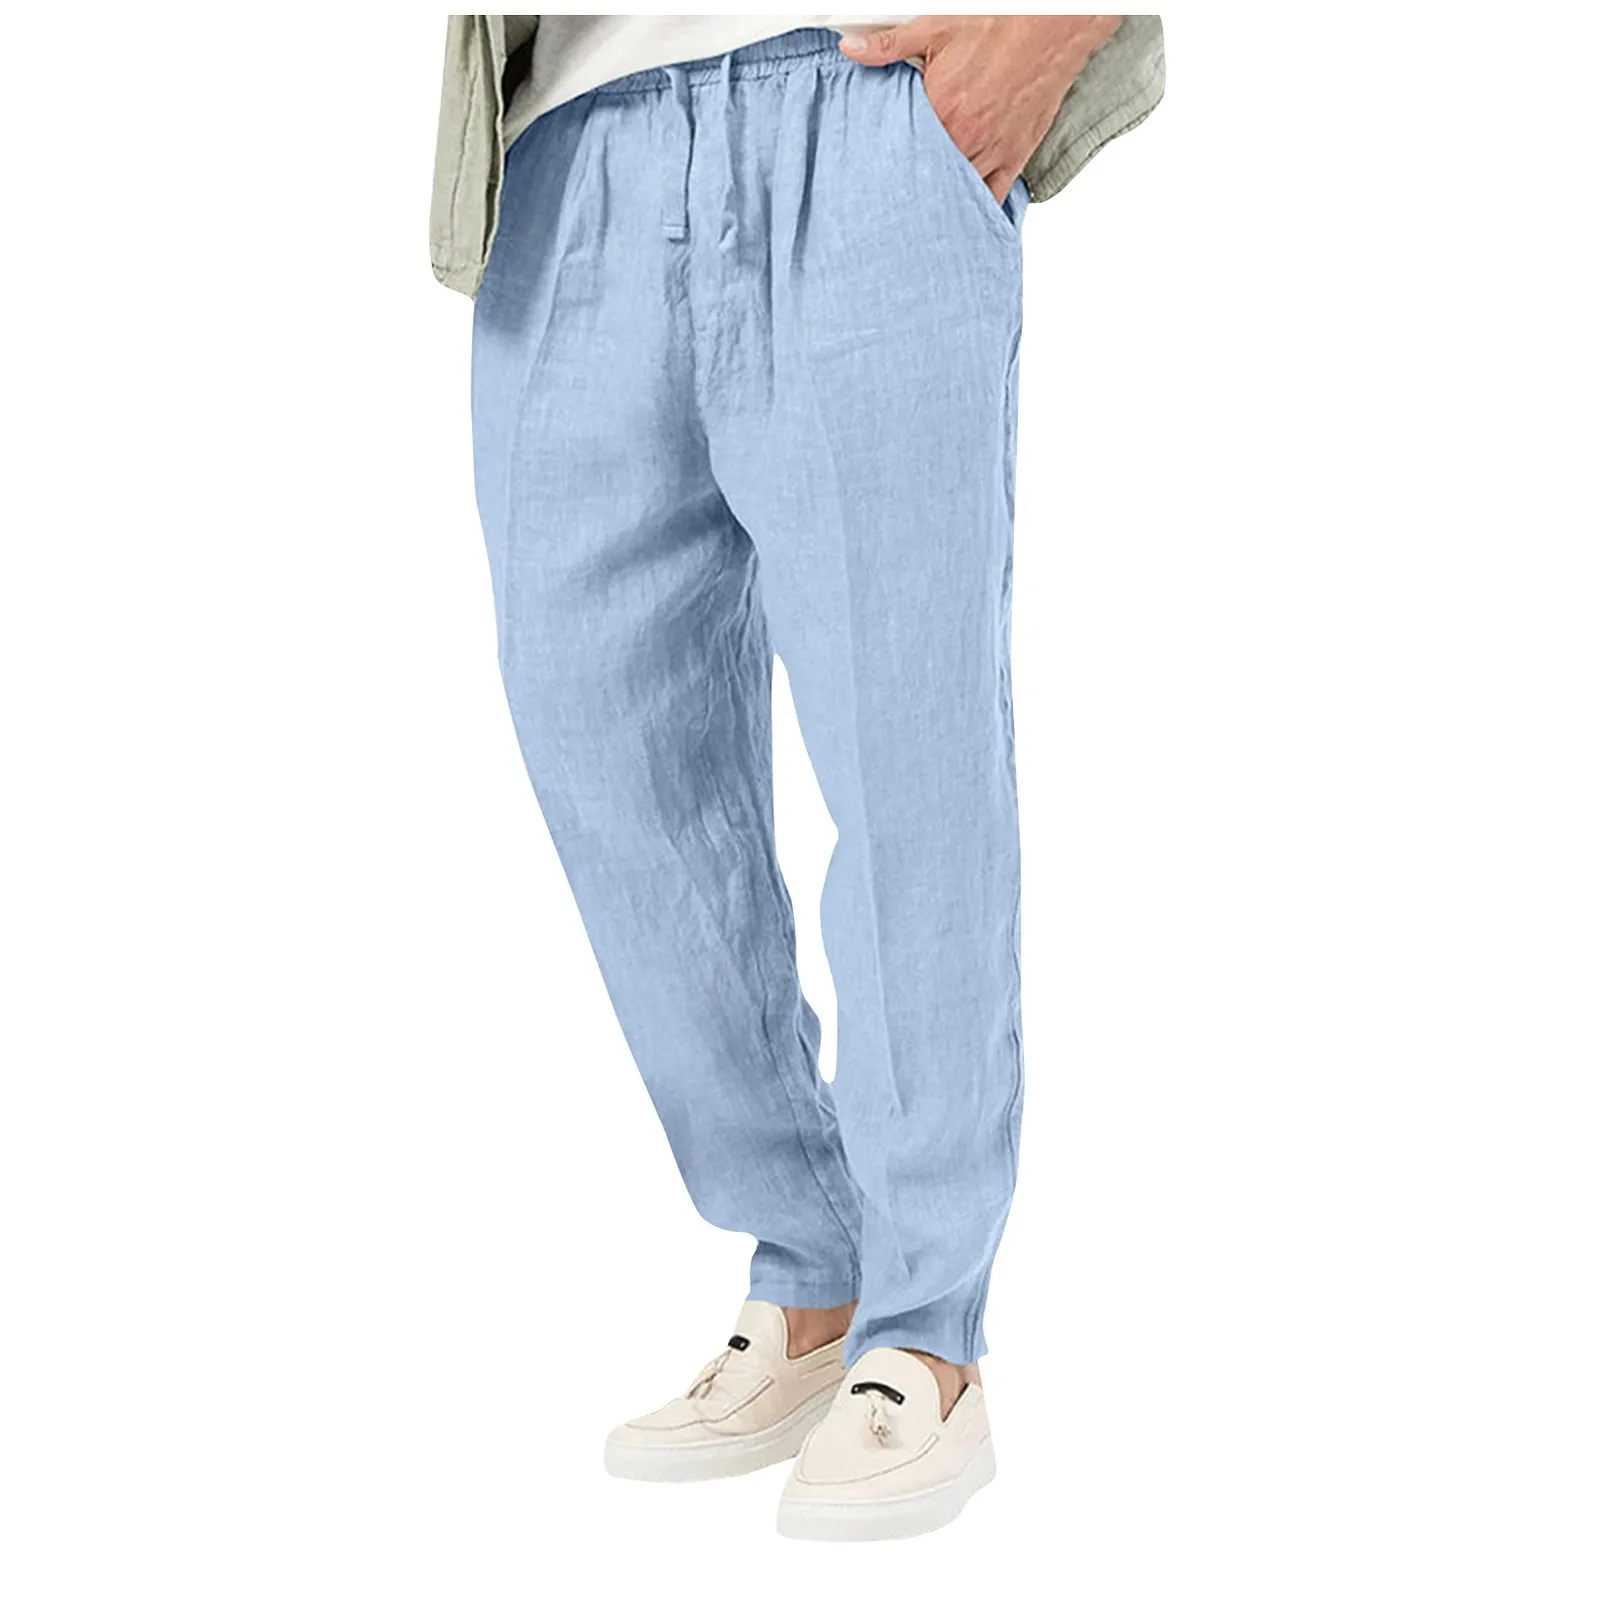 

Брюки мужские из хлопка и льна, повседневные модные однотонные штаны, легкие дышащие, для дома